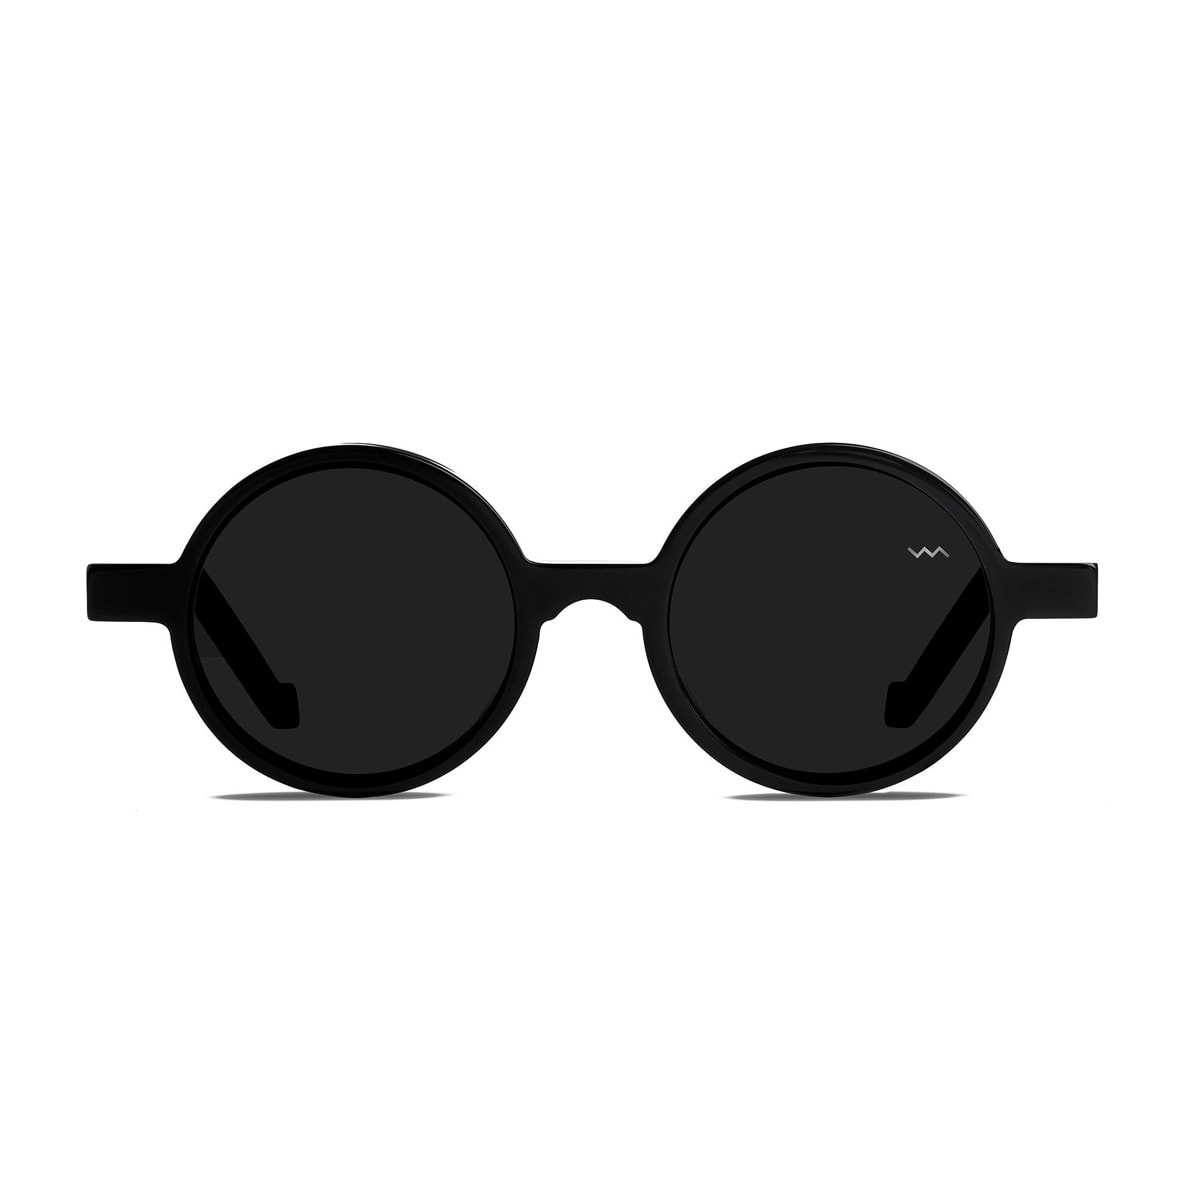 Wl0006 White Label Black Matte Sunglasses